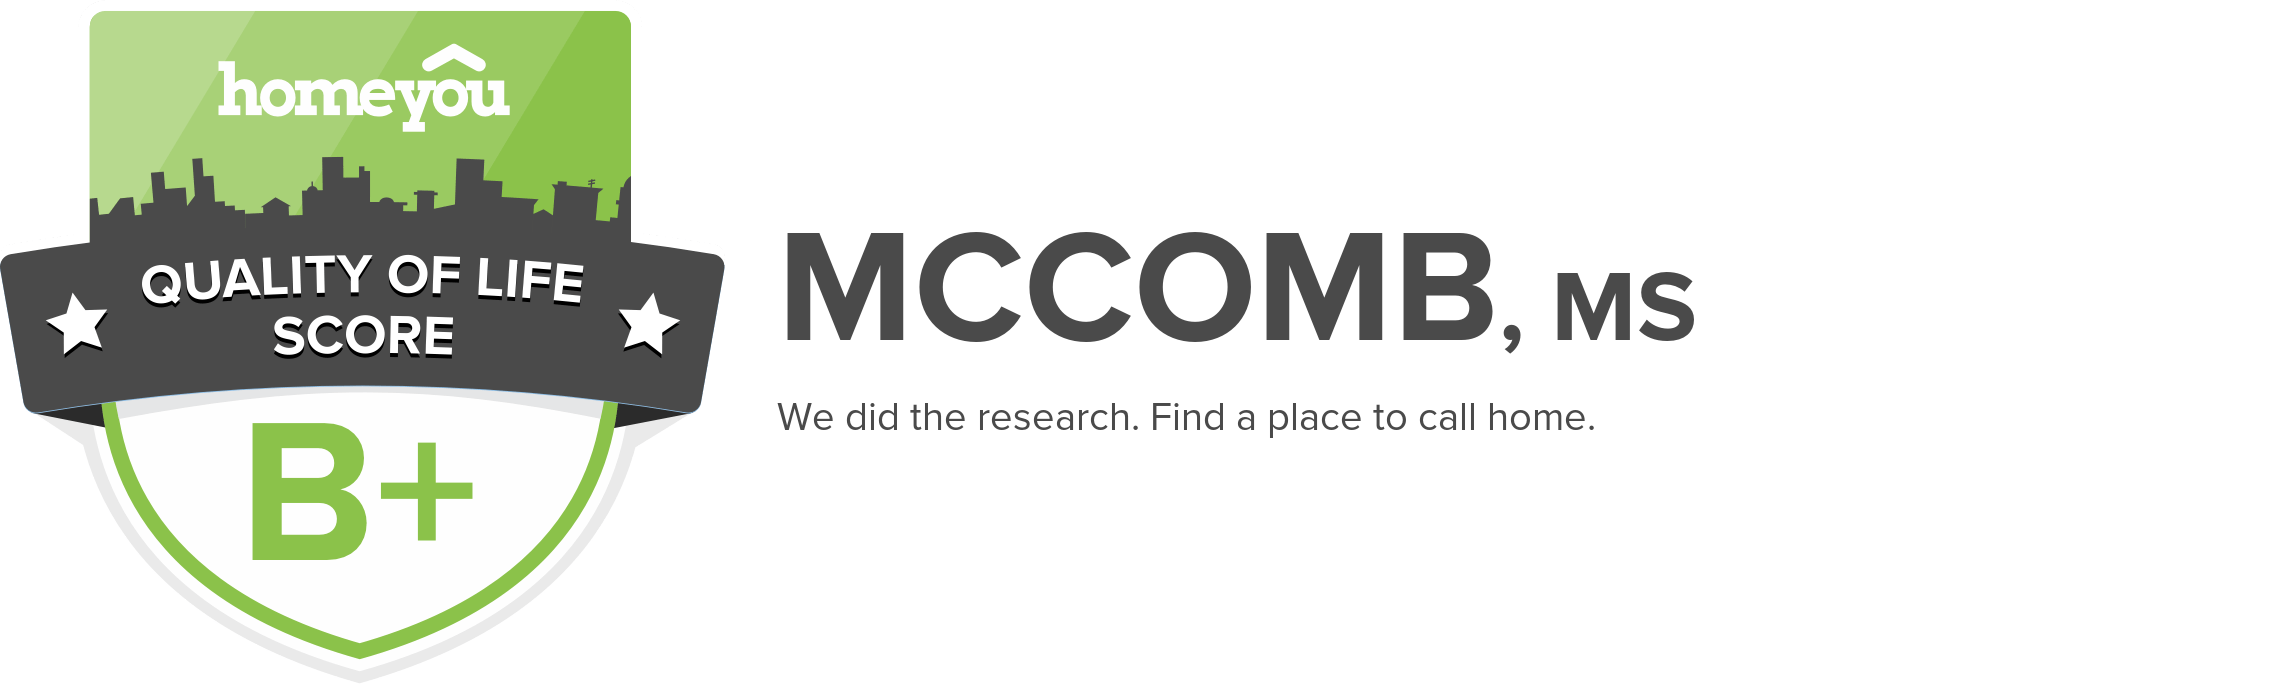 McComb, MS